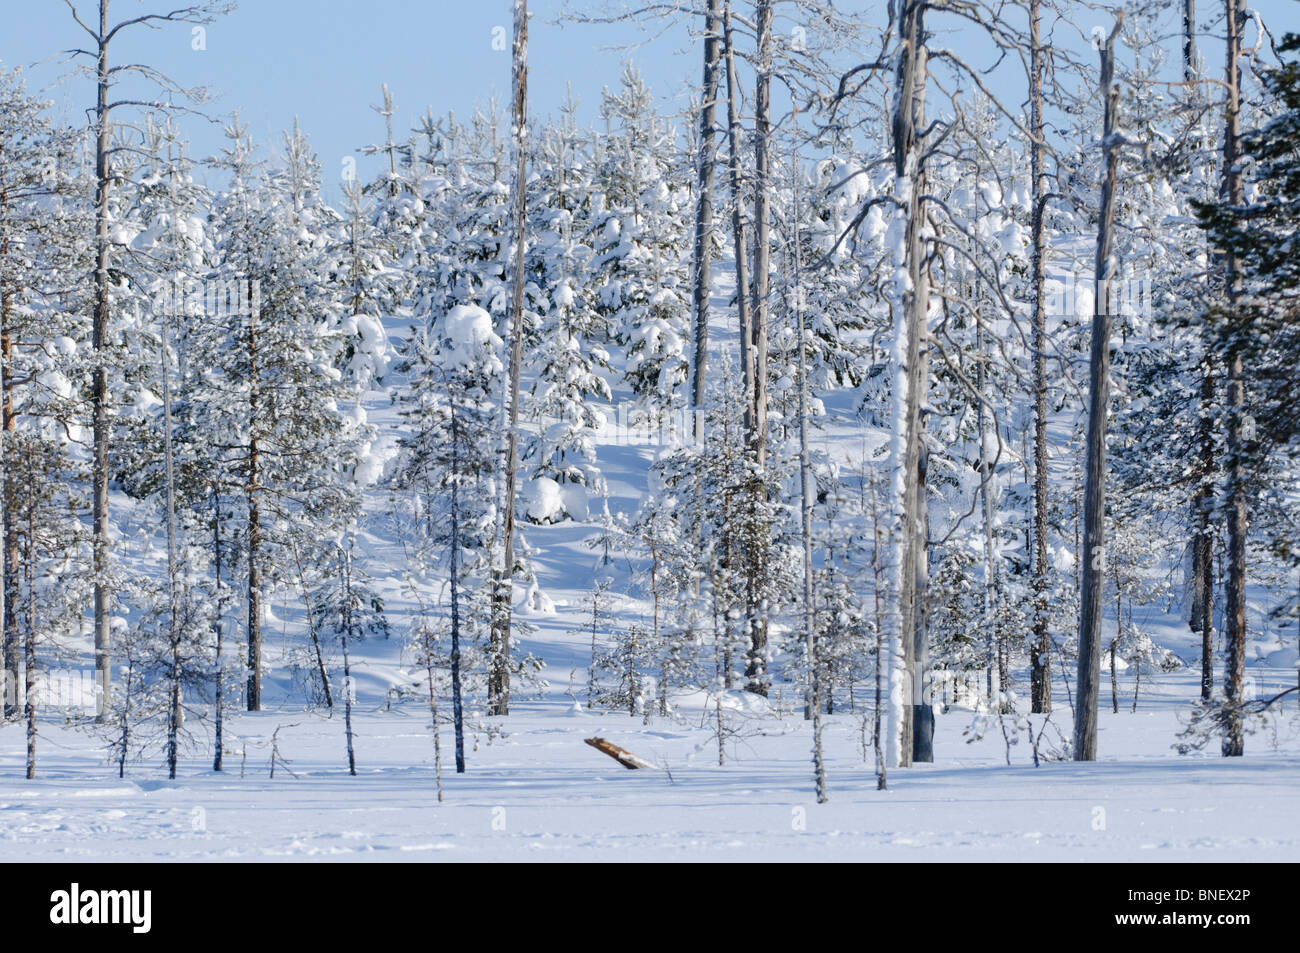 La taiga o bosque boreal en el área de Kuhmo Finlandia, cerca de la frontera con Rusia, en febrero Foto de stock